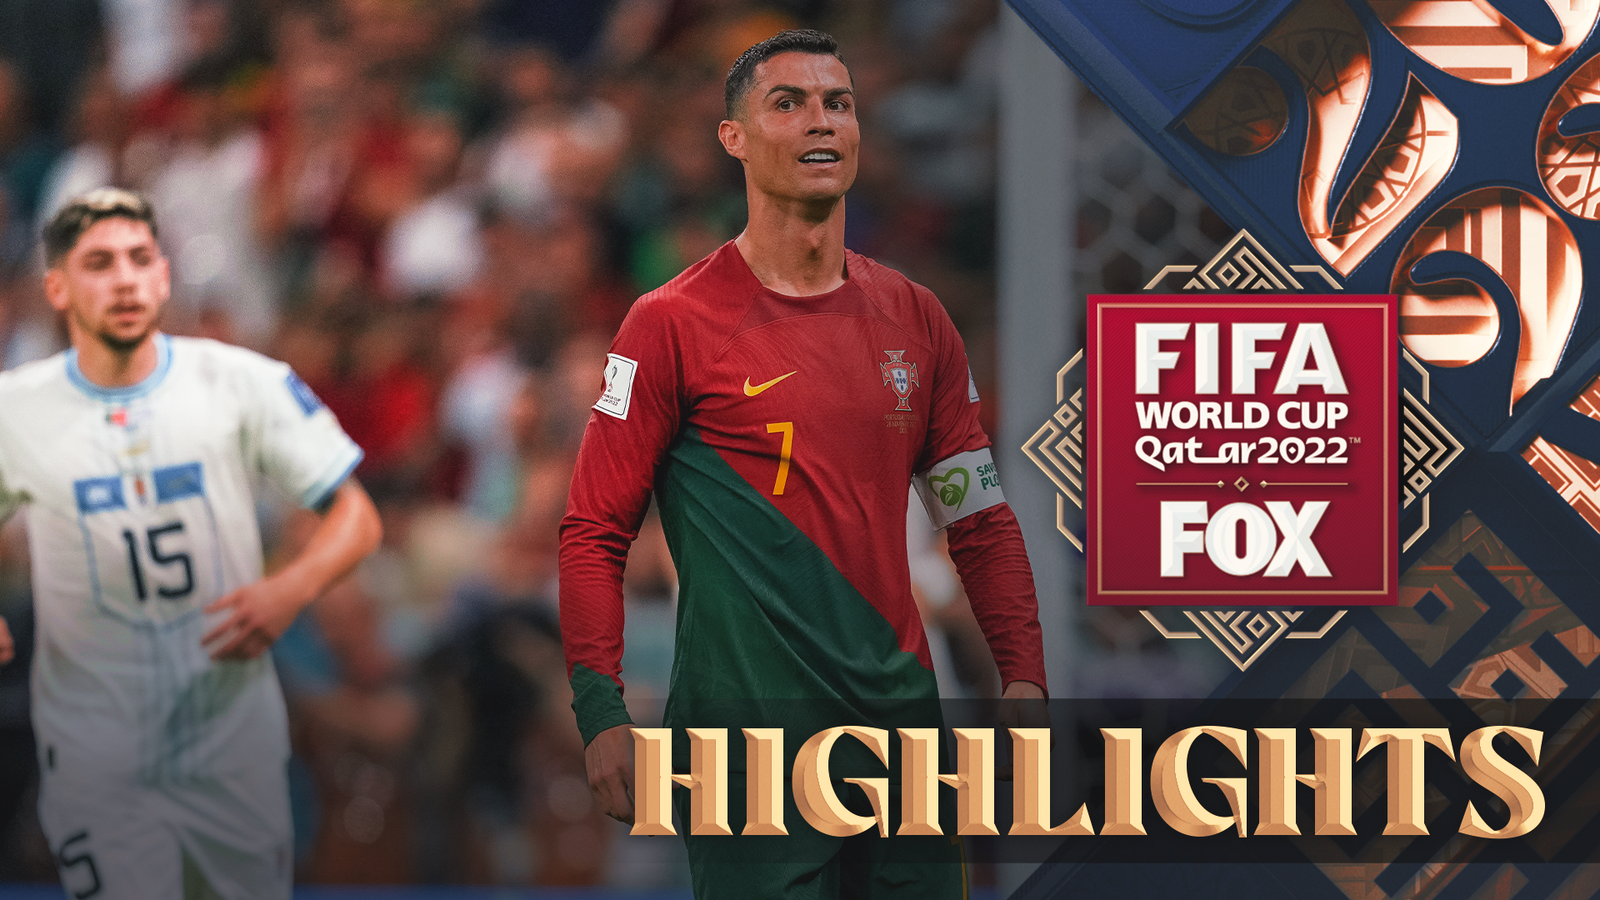 Portugal vs Uruguay highlights